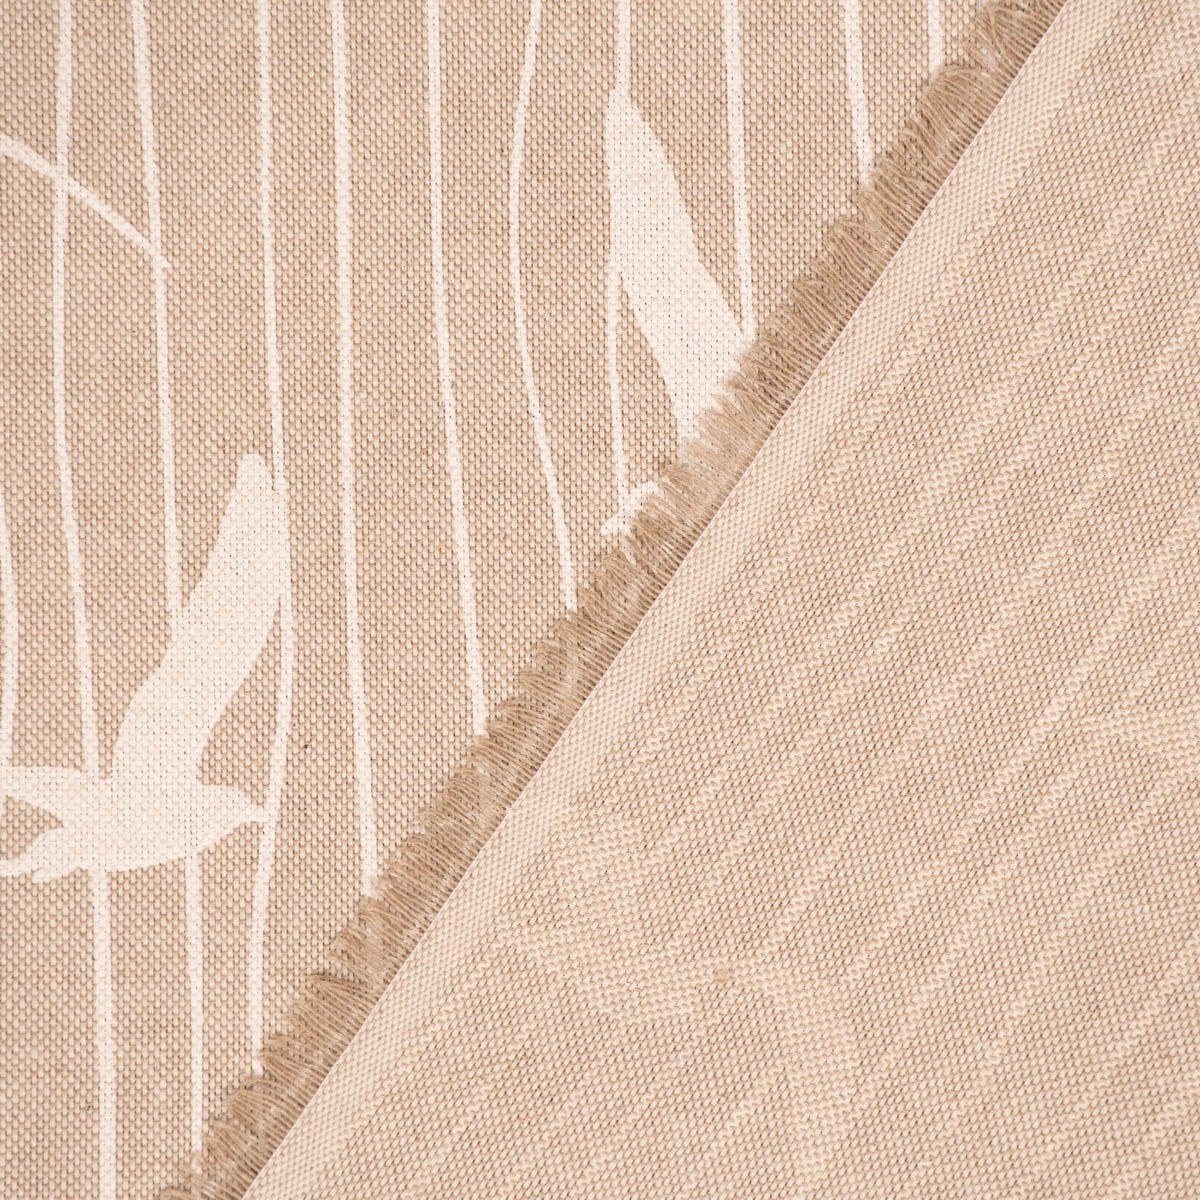 Vorhang SCHÖNER in Stripe vorgewaschen Iconic Smokband made blickdicht, Streifen St), LEBEN., SCHÖNER Möwen Baumwolle, wei, Germany, Vorhang (1 LEBEN. handmade, natur Seagull